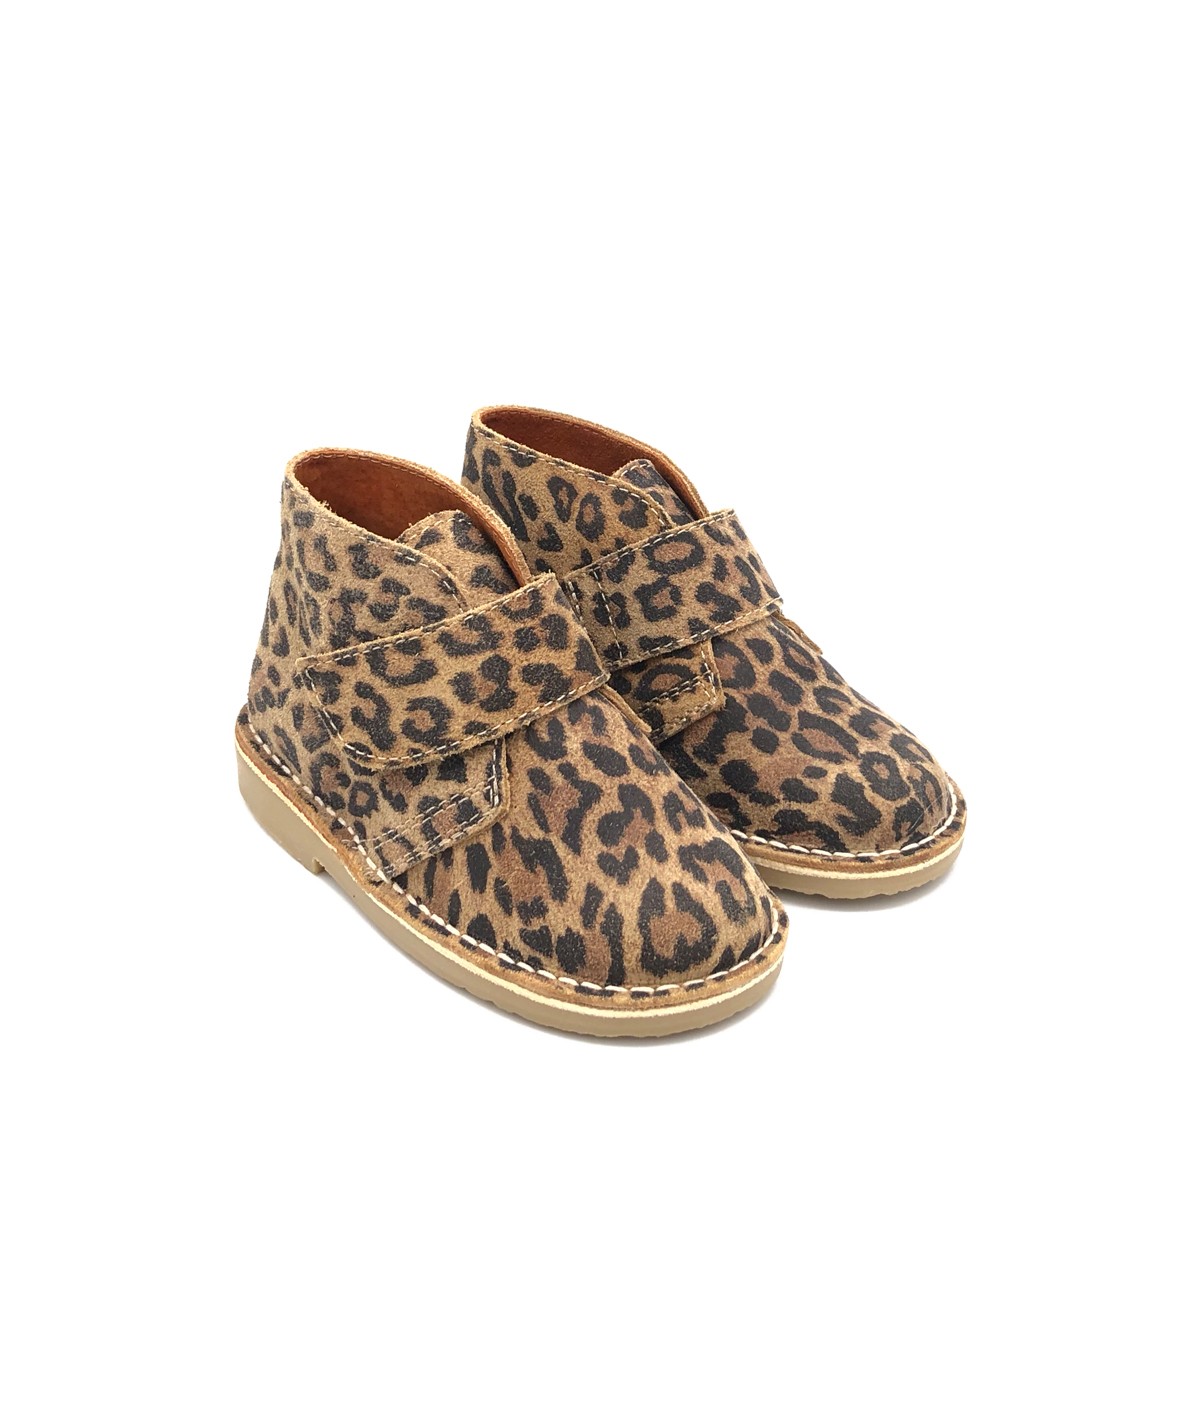 leopard print desert boots